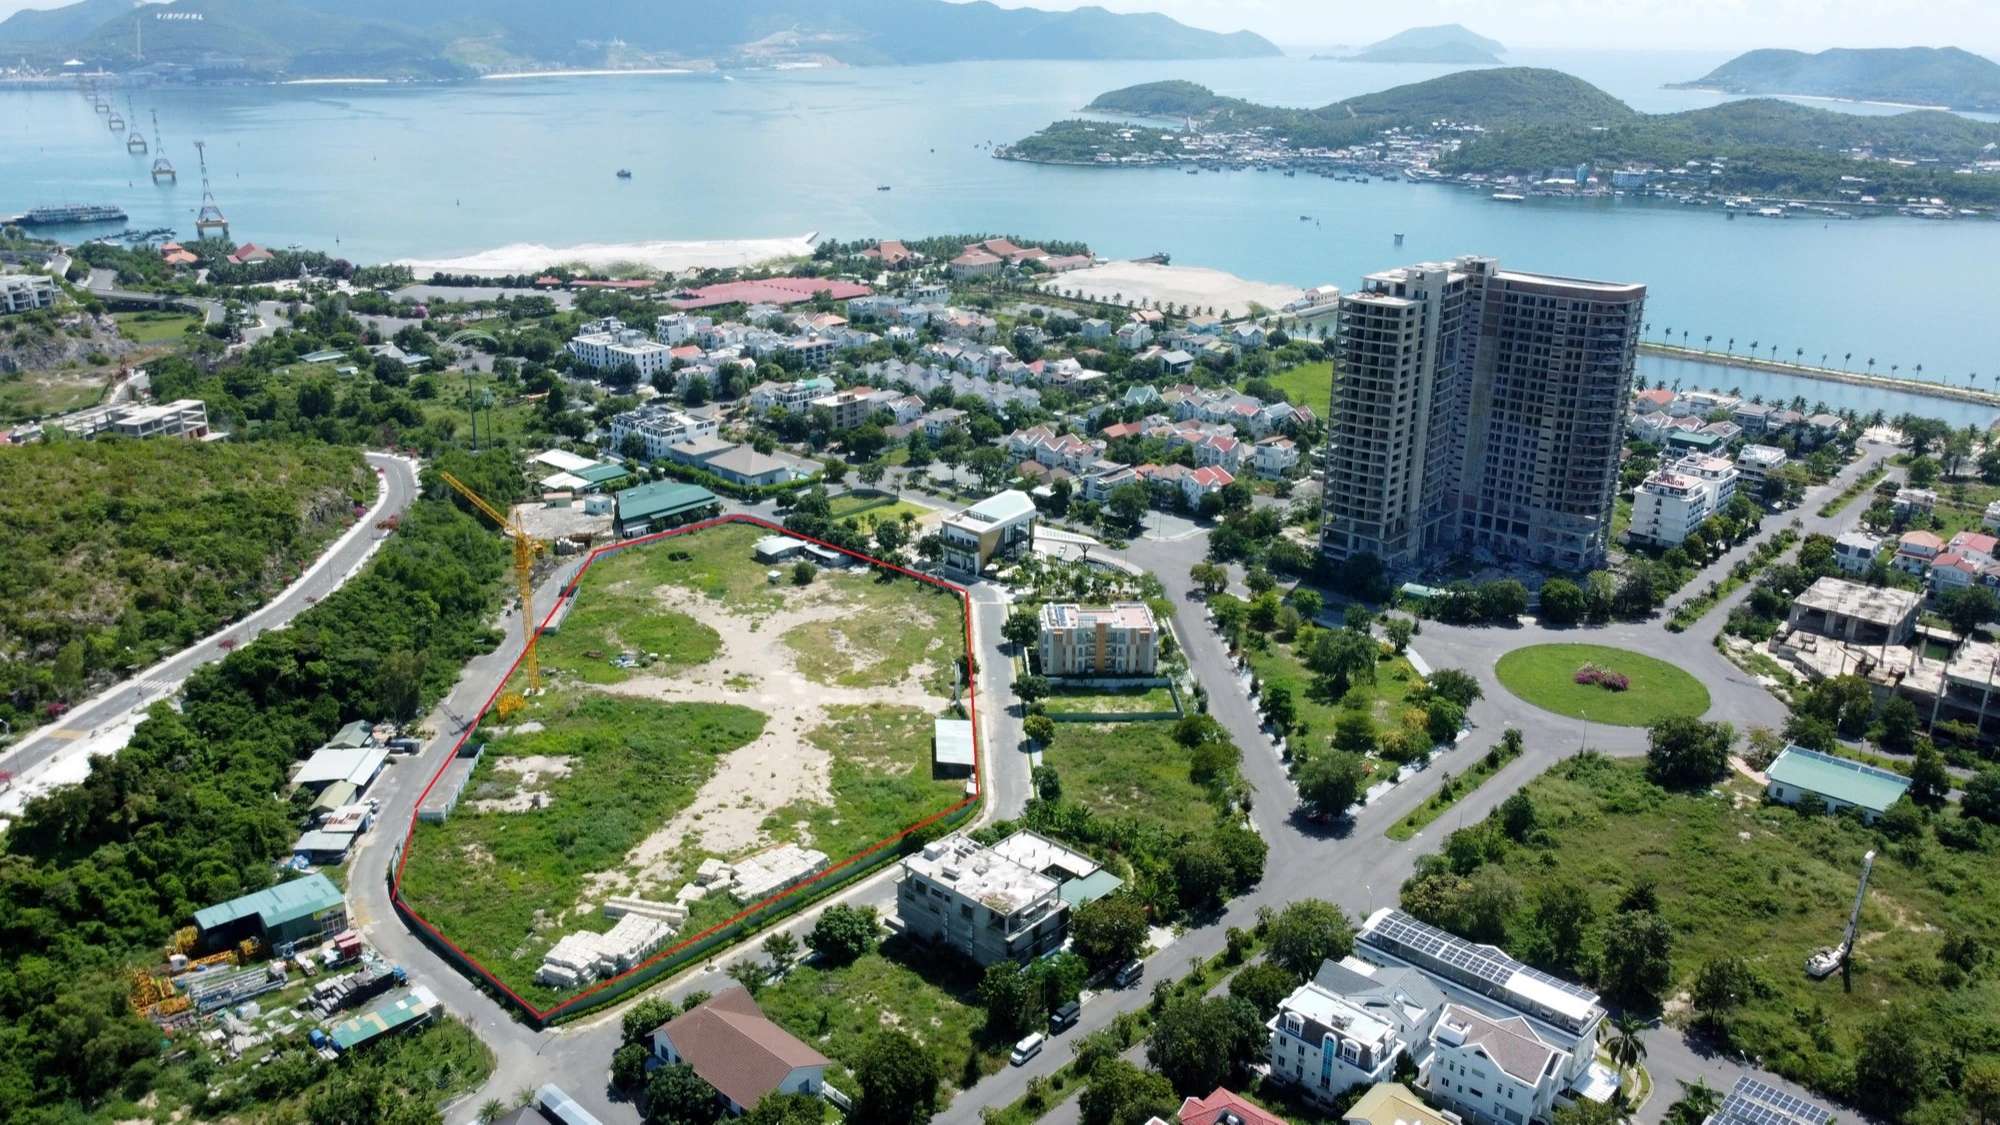  Hưng Thịnh Land đầu tư dự án hơn 2.000 tỷ tại khu đô thị biển An Viên Nha Trang